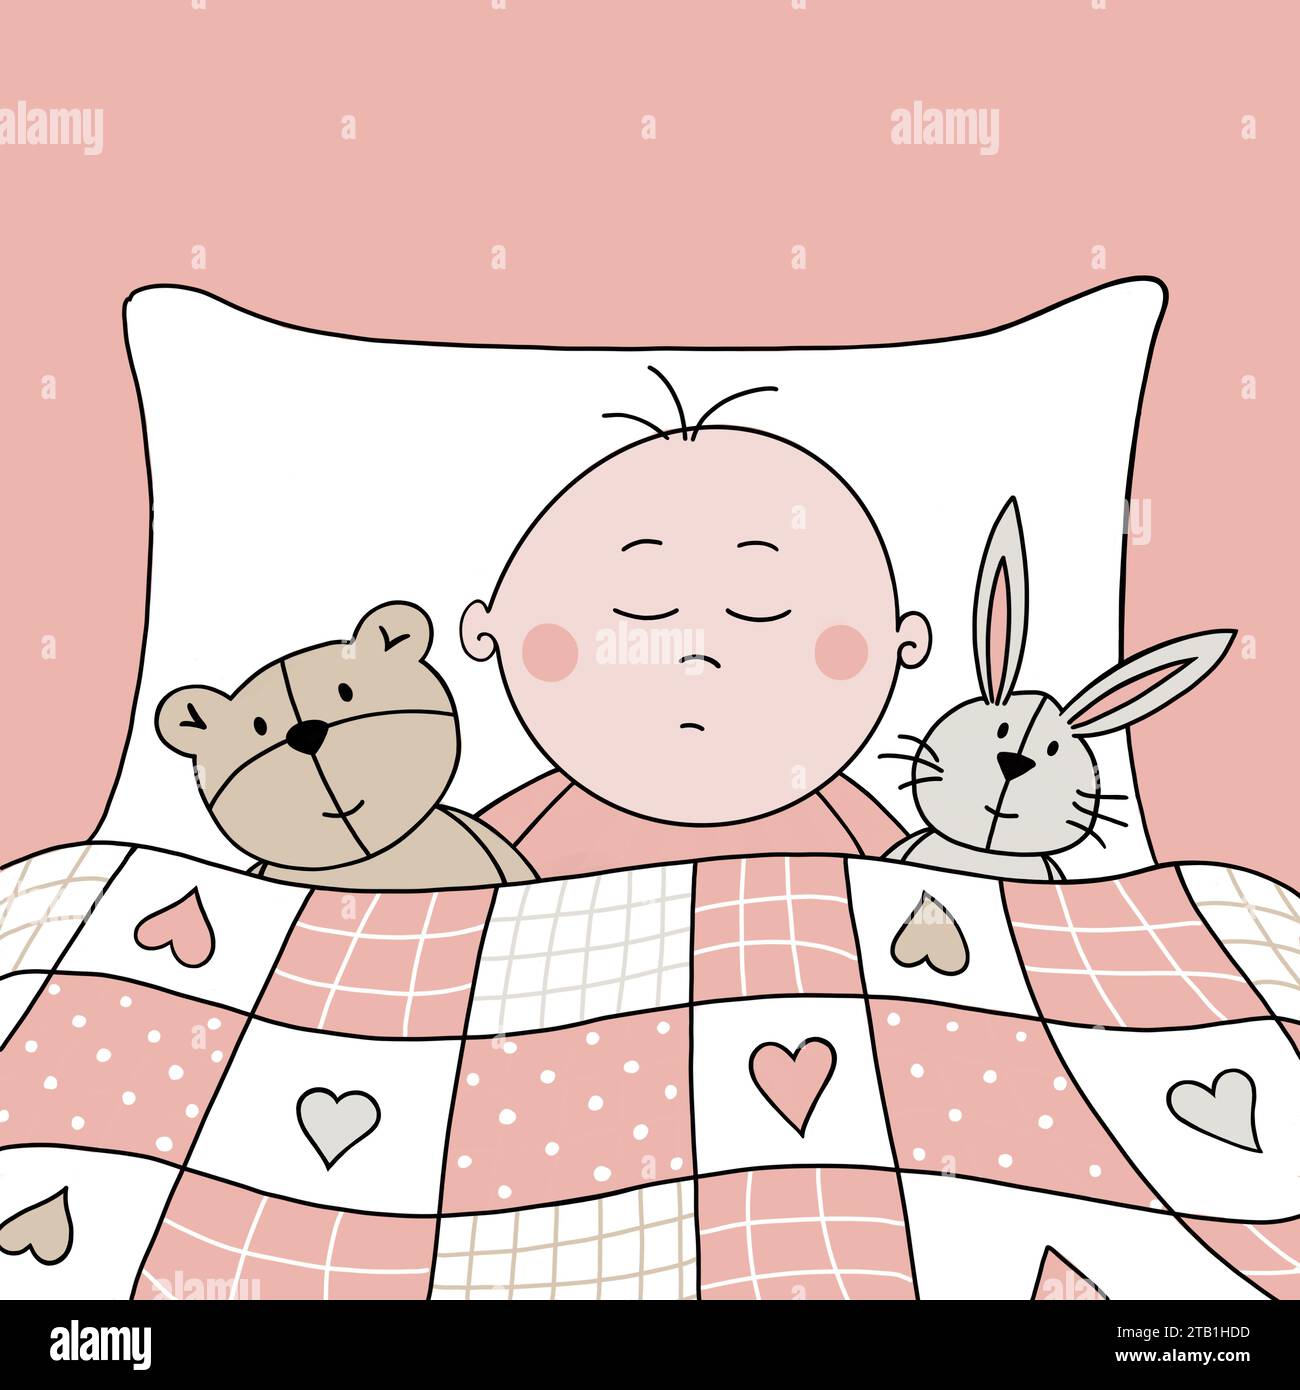 Petite fille dormant. Enfant faisant une sieste. Mignon bébé de dessin animé endormi avec ours en peluche et lapin préférés, sous une couette patchwork rose confortable. Banque D'Images